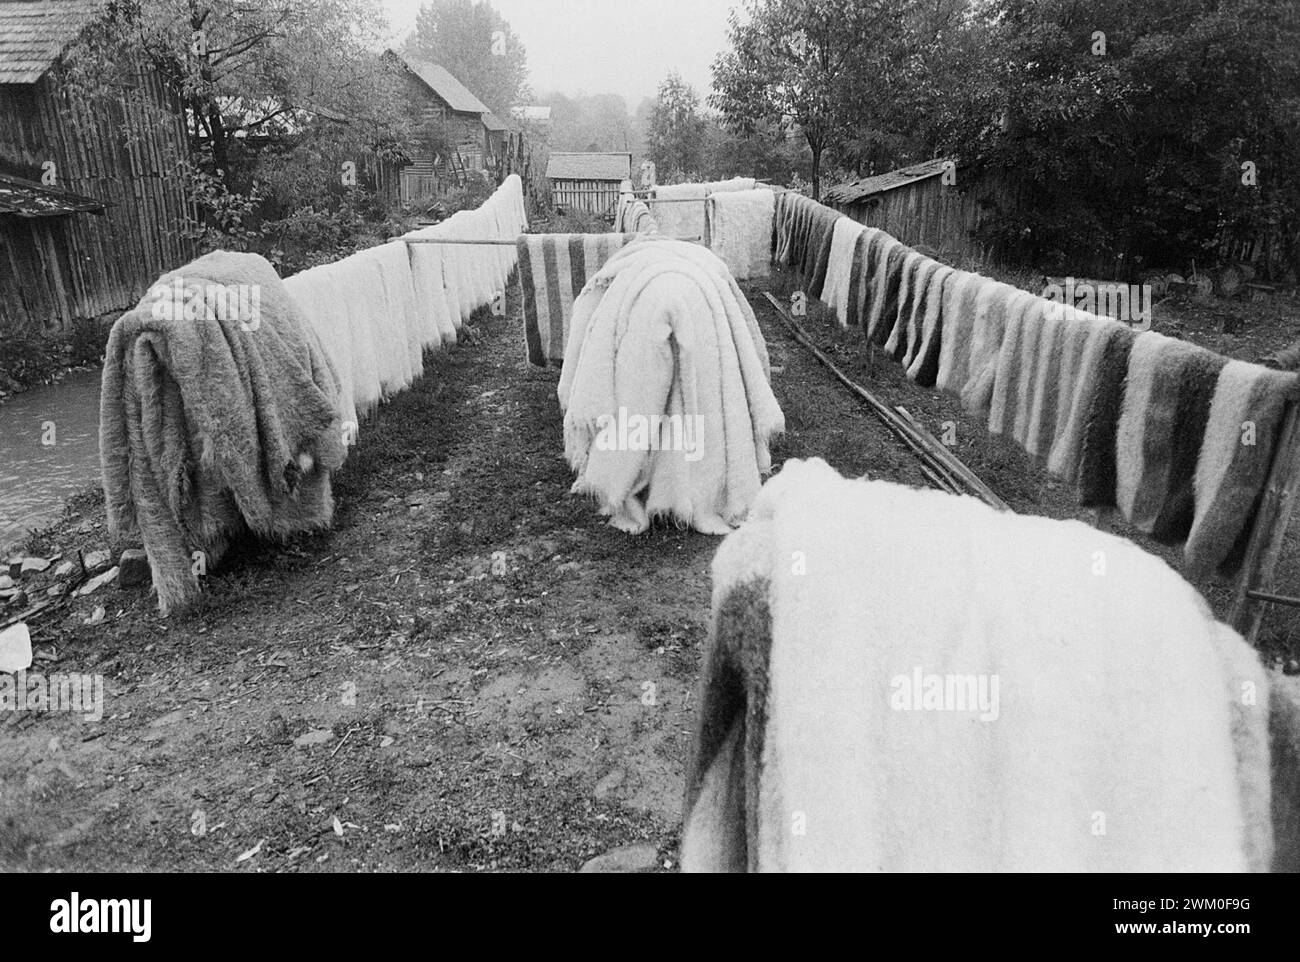 Vrancea County, Rumänien, 2000. Eine große Anzahl traditioneller Wolldecken trocknet nach dem Waschen in einer Wassermühle aus. Stockfoto